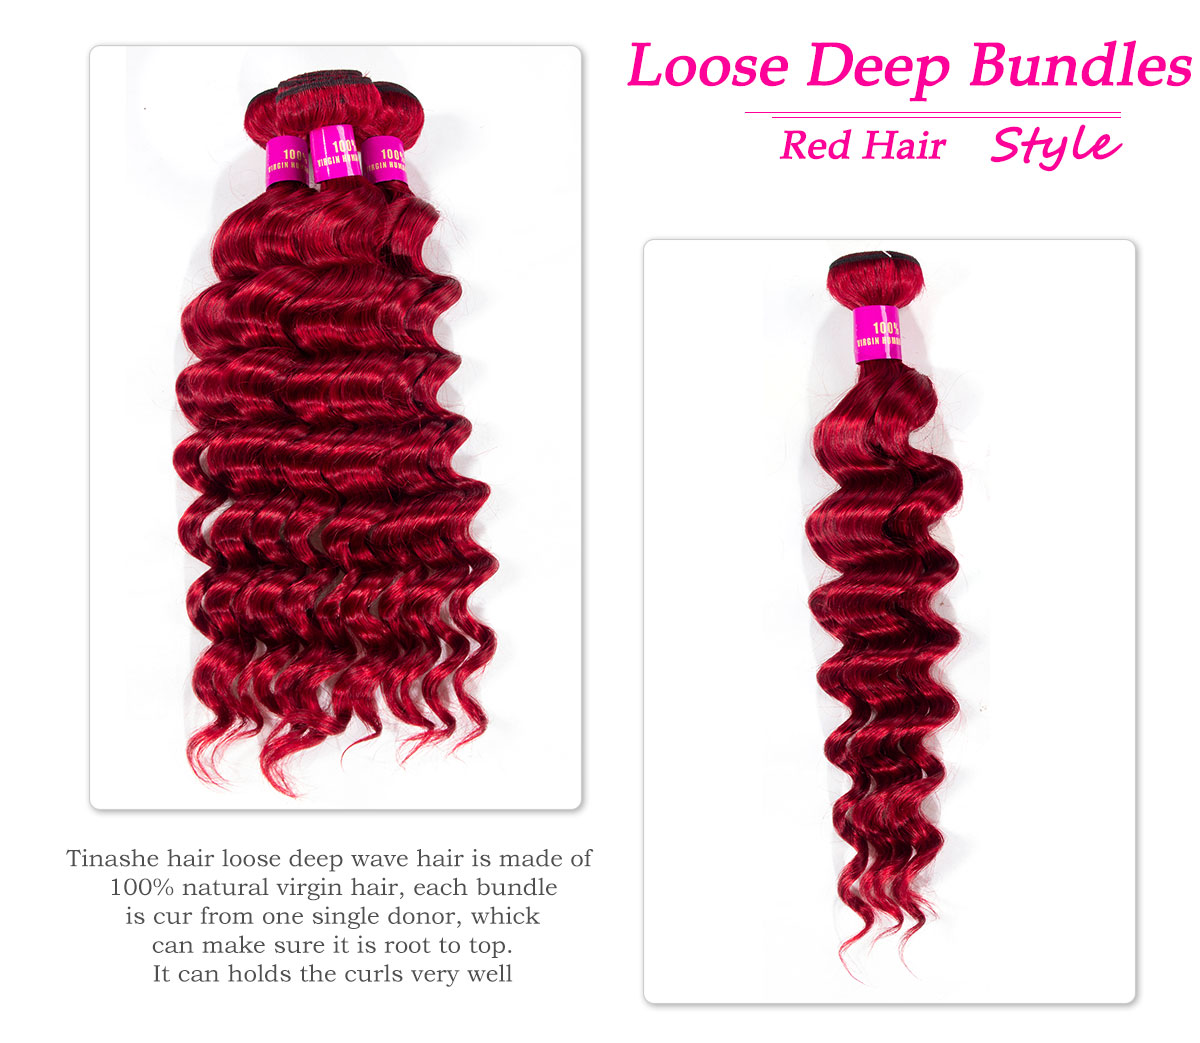 red loose deep bundles